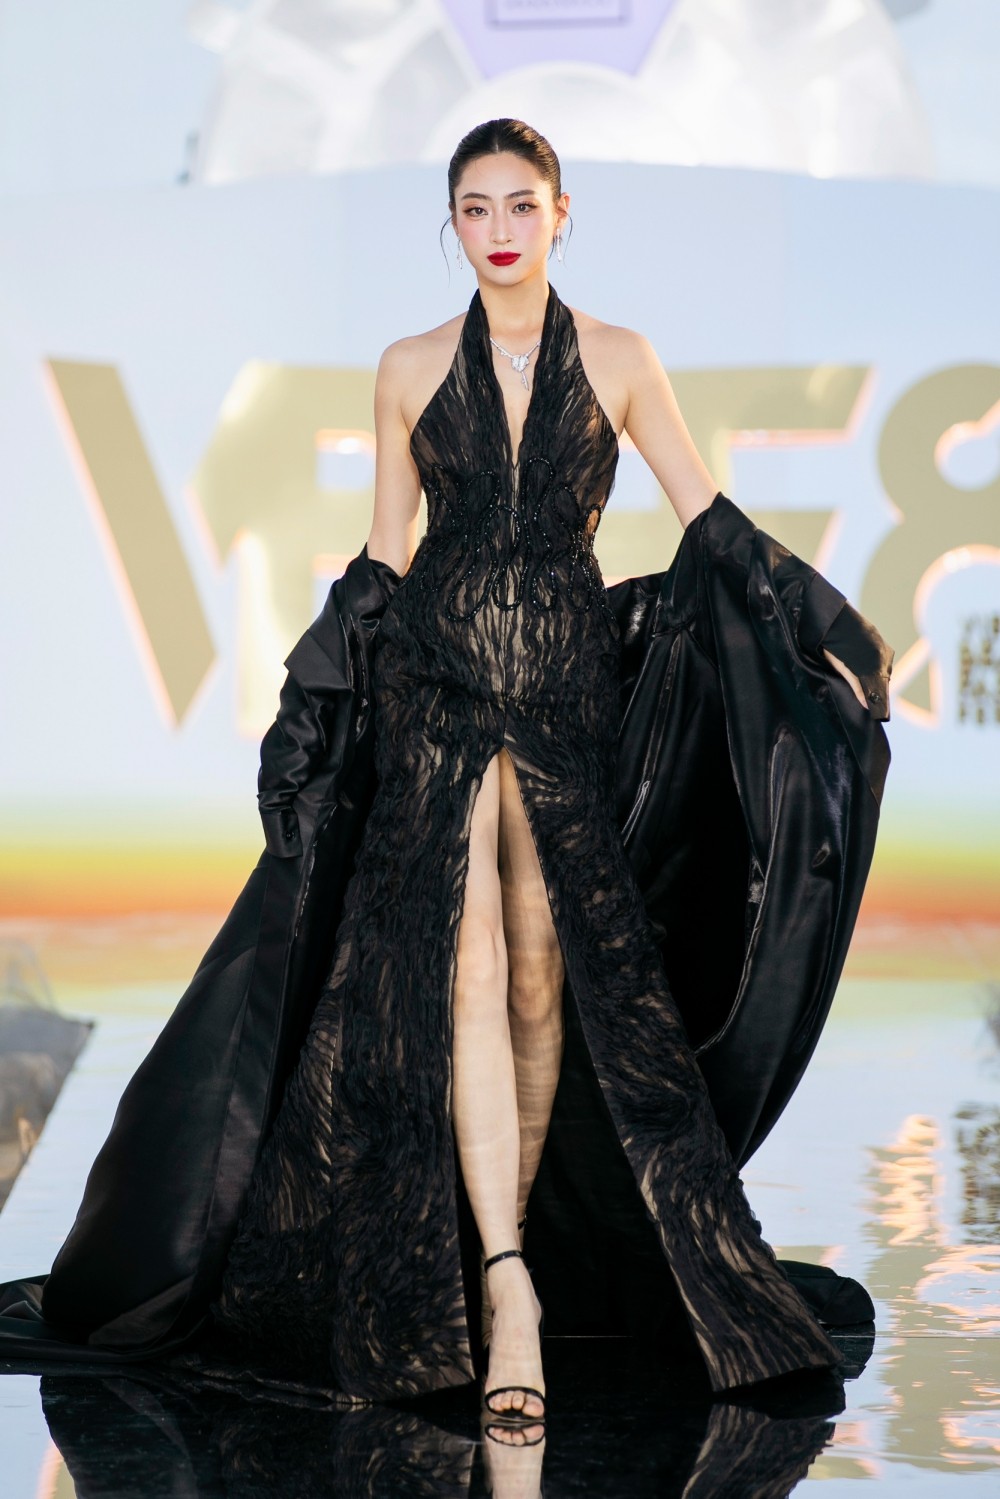 Đảm nhận vị trí vedette trong BST Chạm của NTK Tron Bùi là Hoa hậu Lương Thùy Linh. Nàng hậu khoe nhan sắc xinh đẹp sang trọng trong thiết kế xuyên thấu màu đen.